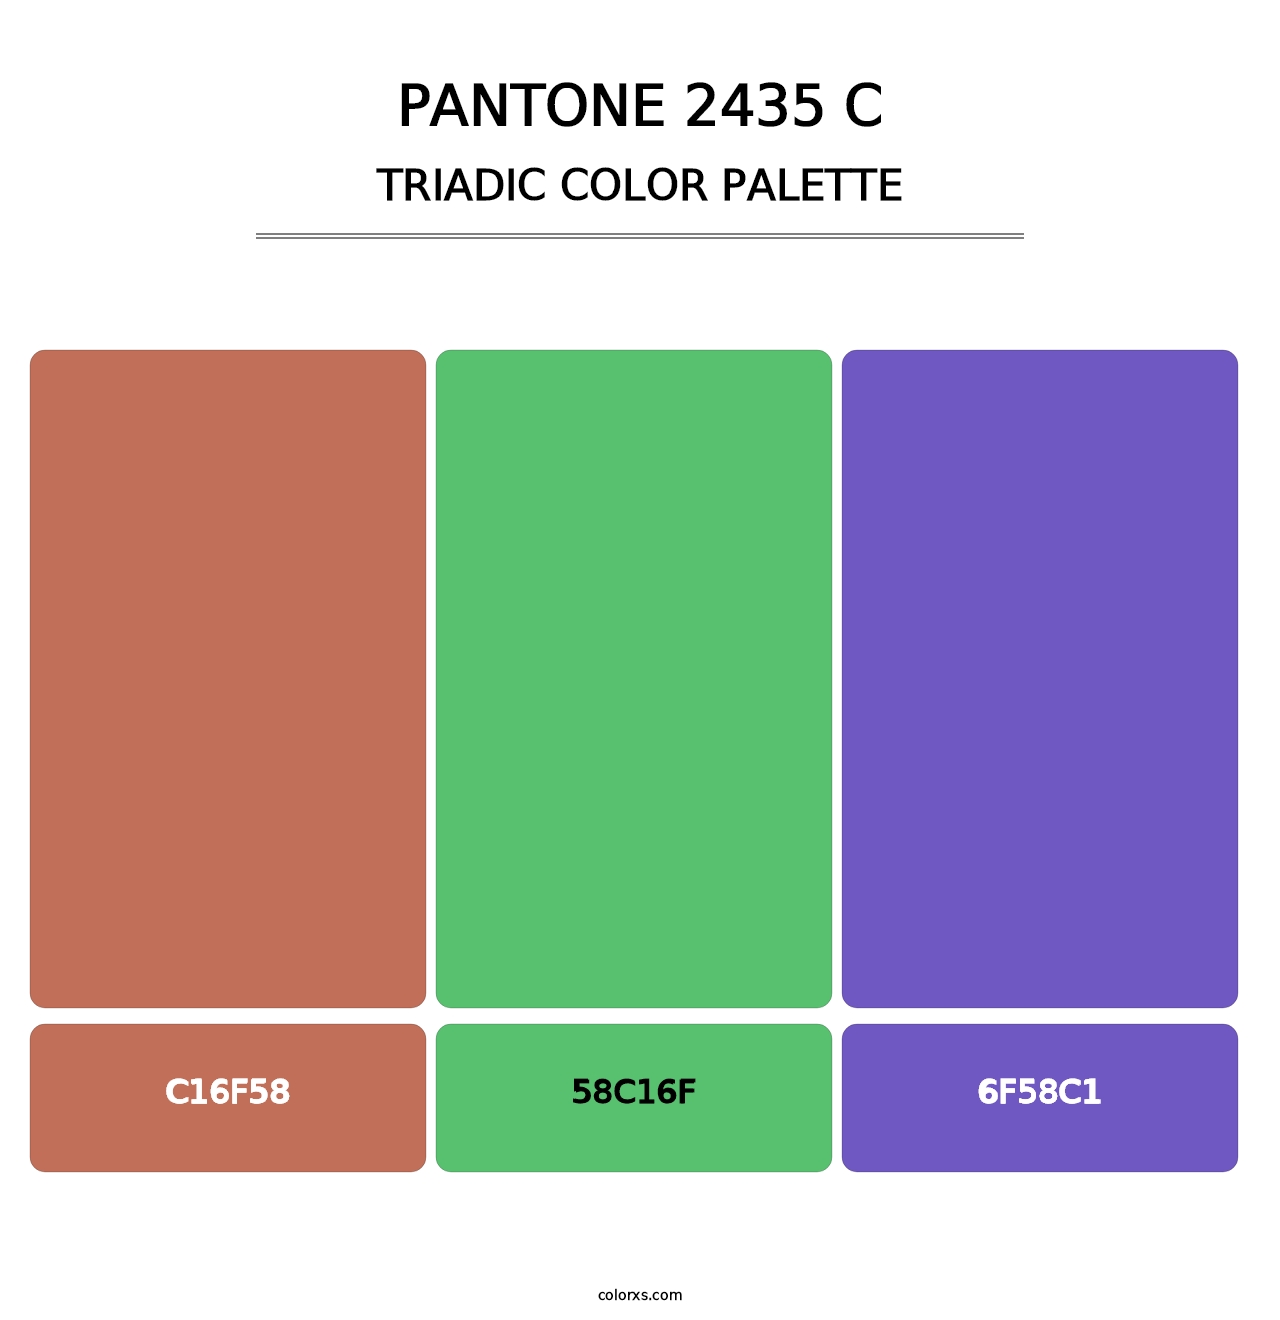 PANTONE 2435 C - Triadic Color Palette